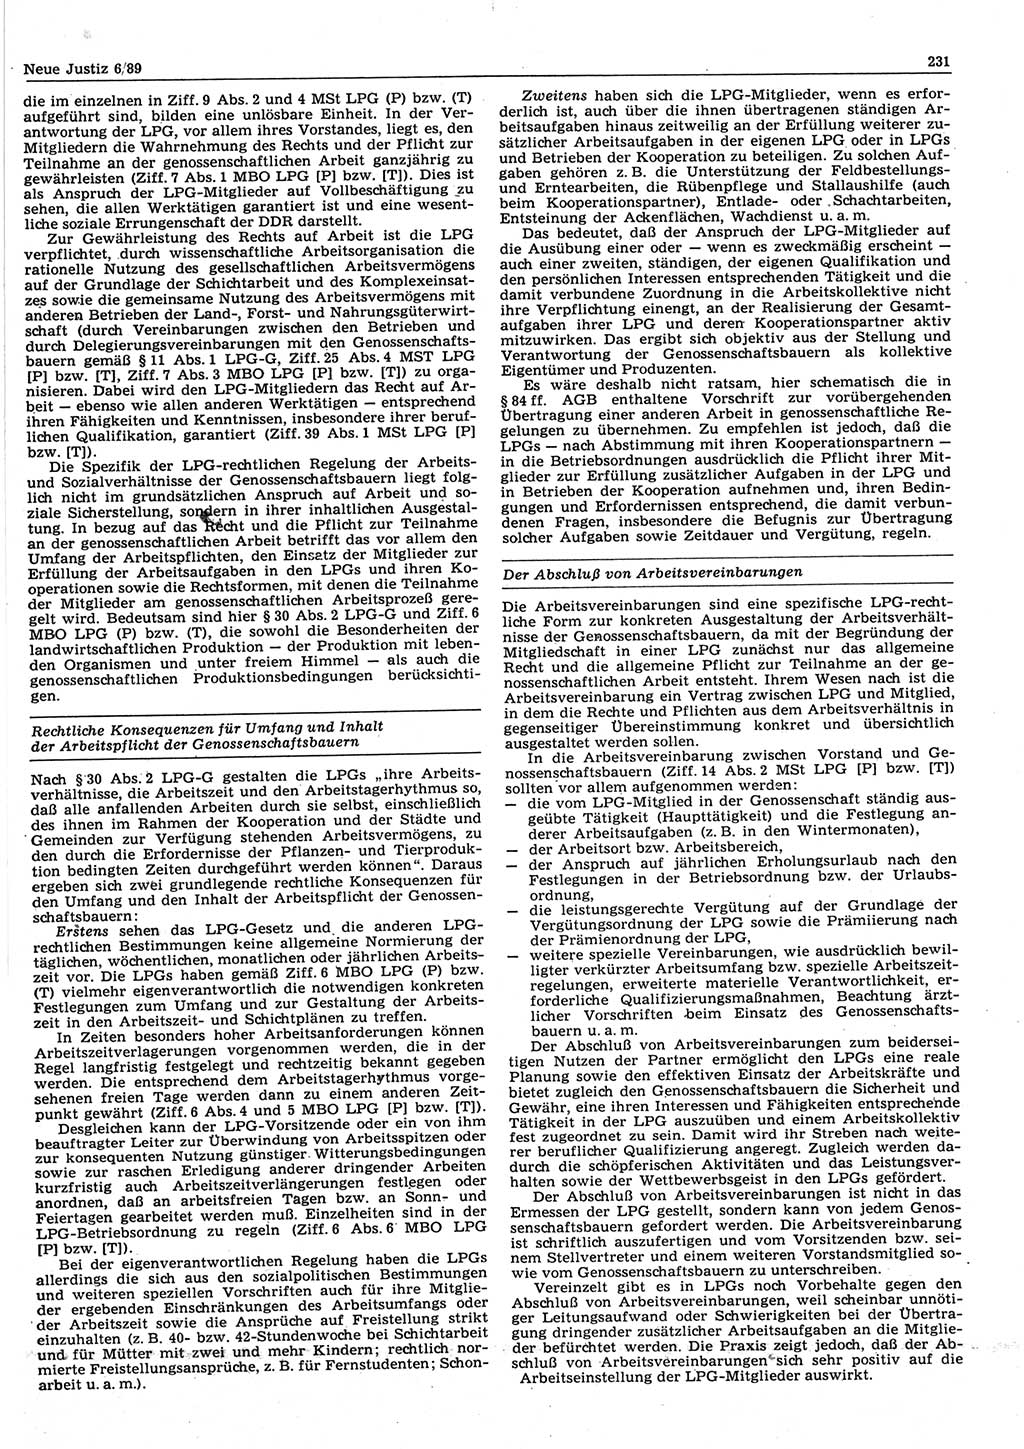 Neue Justiz (NJ), Zeitschrift für sozialistisches Recht und Gesetzlichkeit [Deutsche Demokratische Republik (DDR)], 43. Jahrgang 1989, Seite 231 (NJ DDR 1989, S. 231)